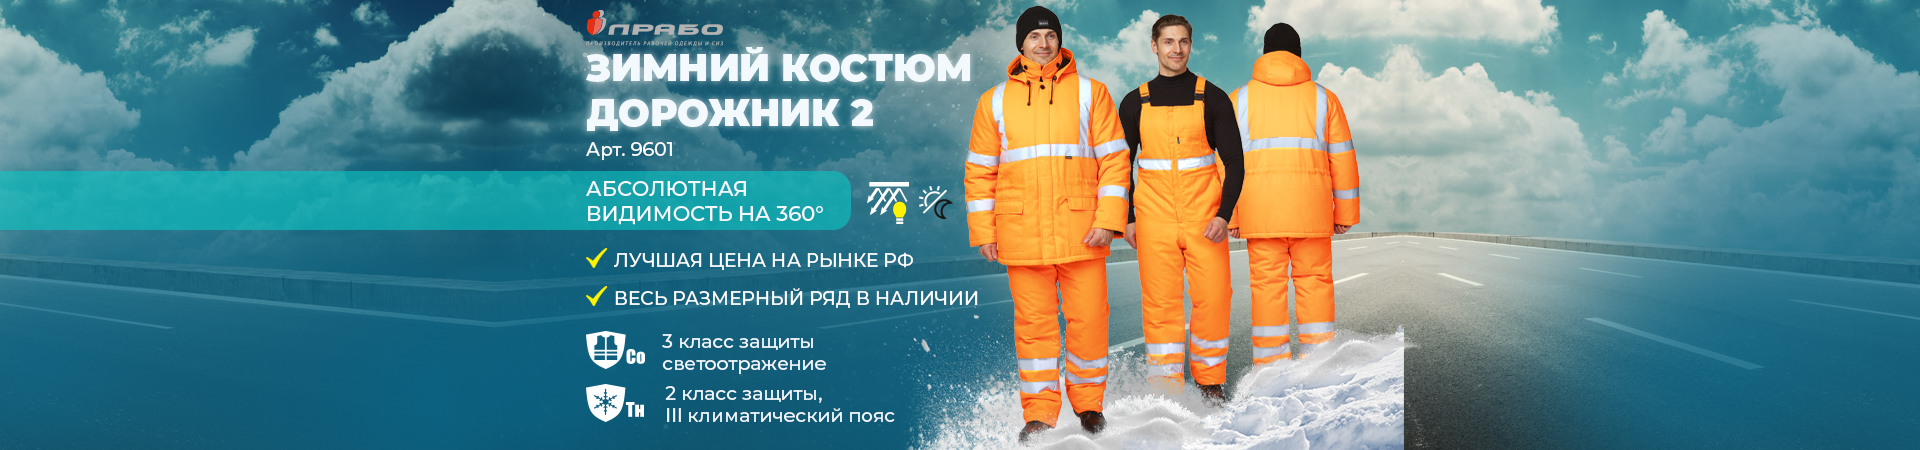 Утеплённый костюм «Дорожник 2» повышенной видимости — верный выбор для зимы и безопасности